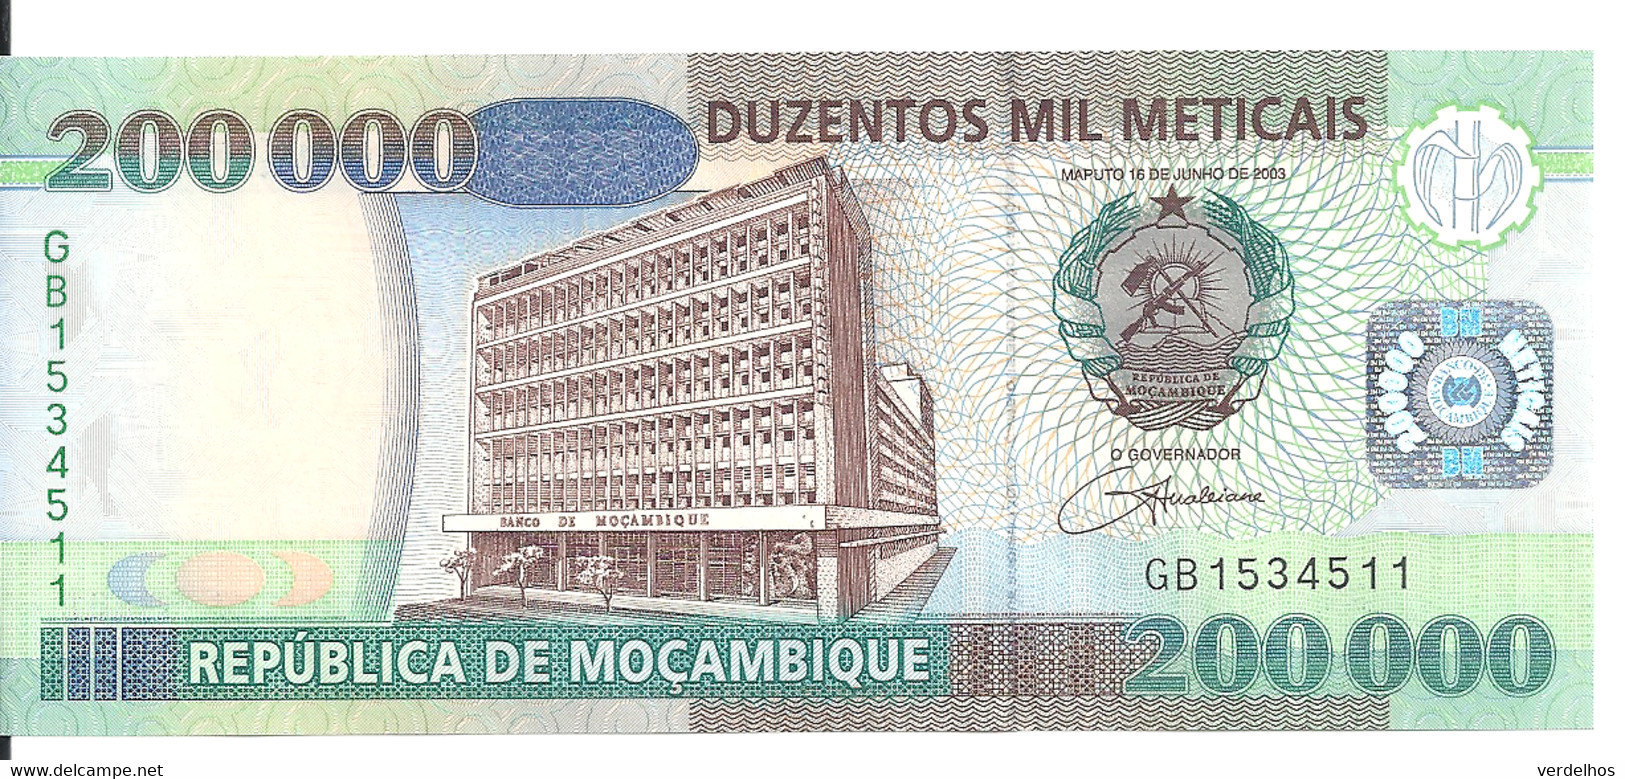 MOZAMBIQUE 200000 METICAIS 2003 UNC P 141 - Moçambique